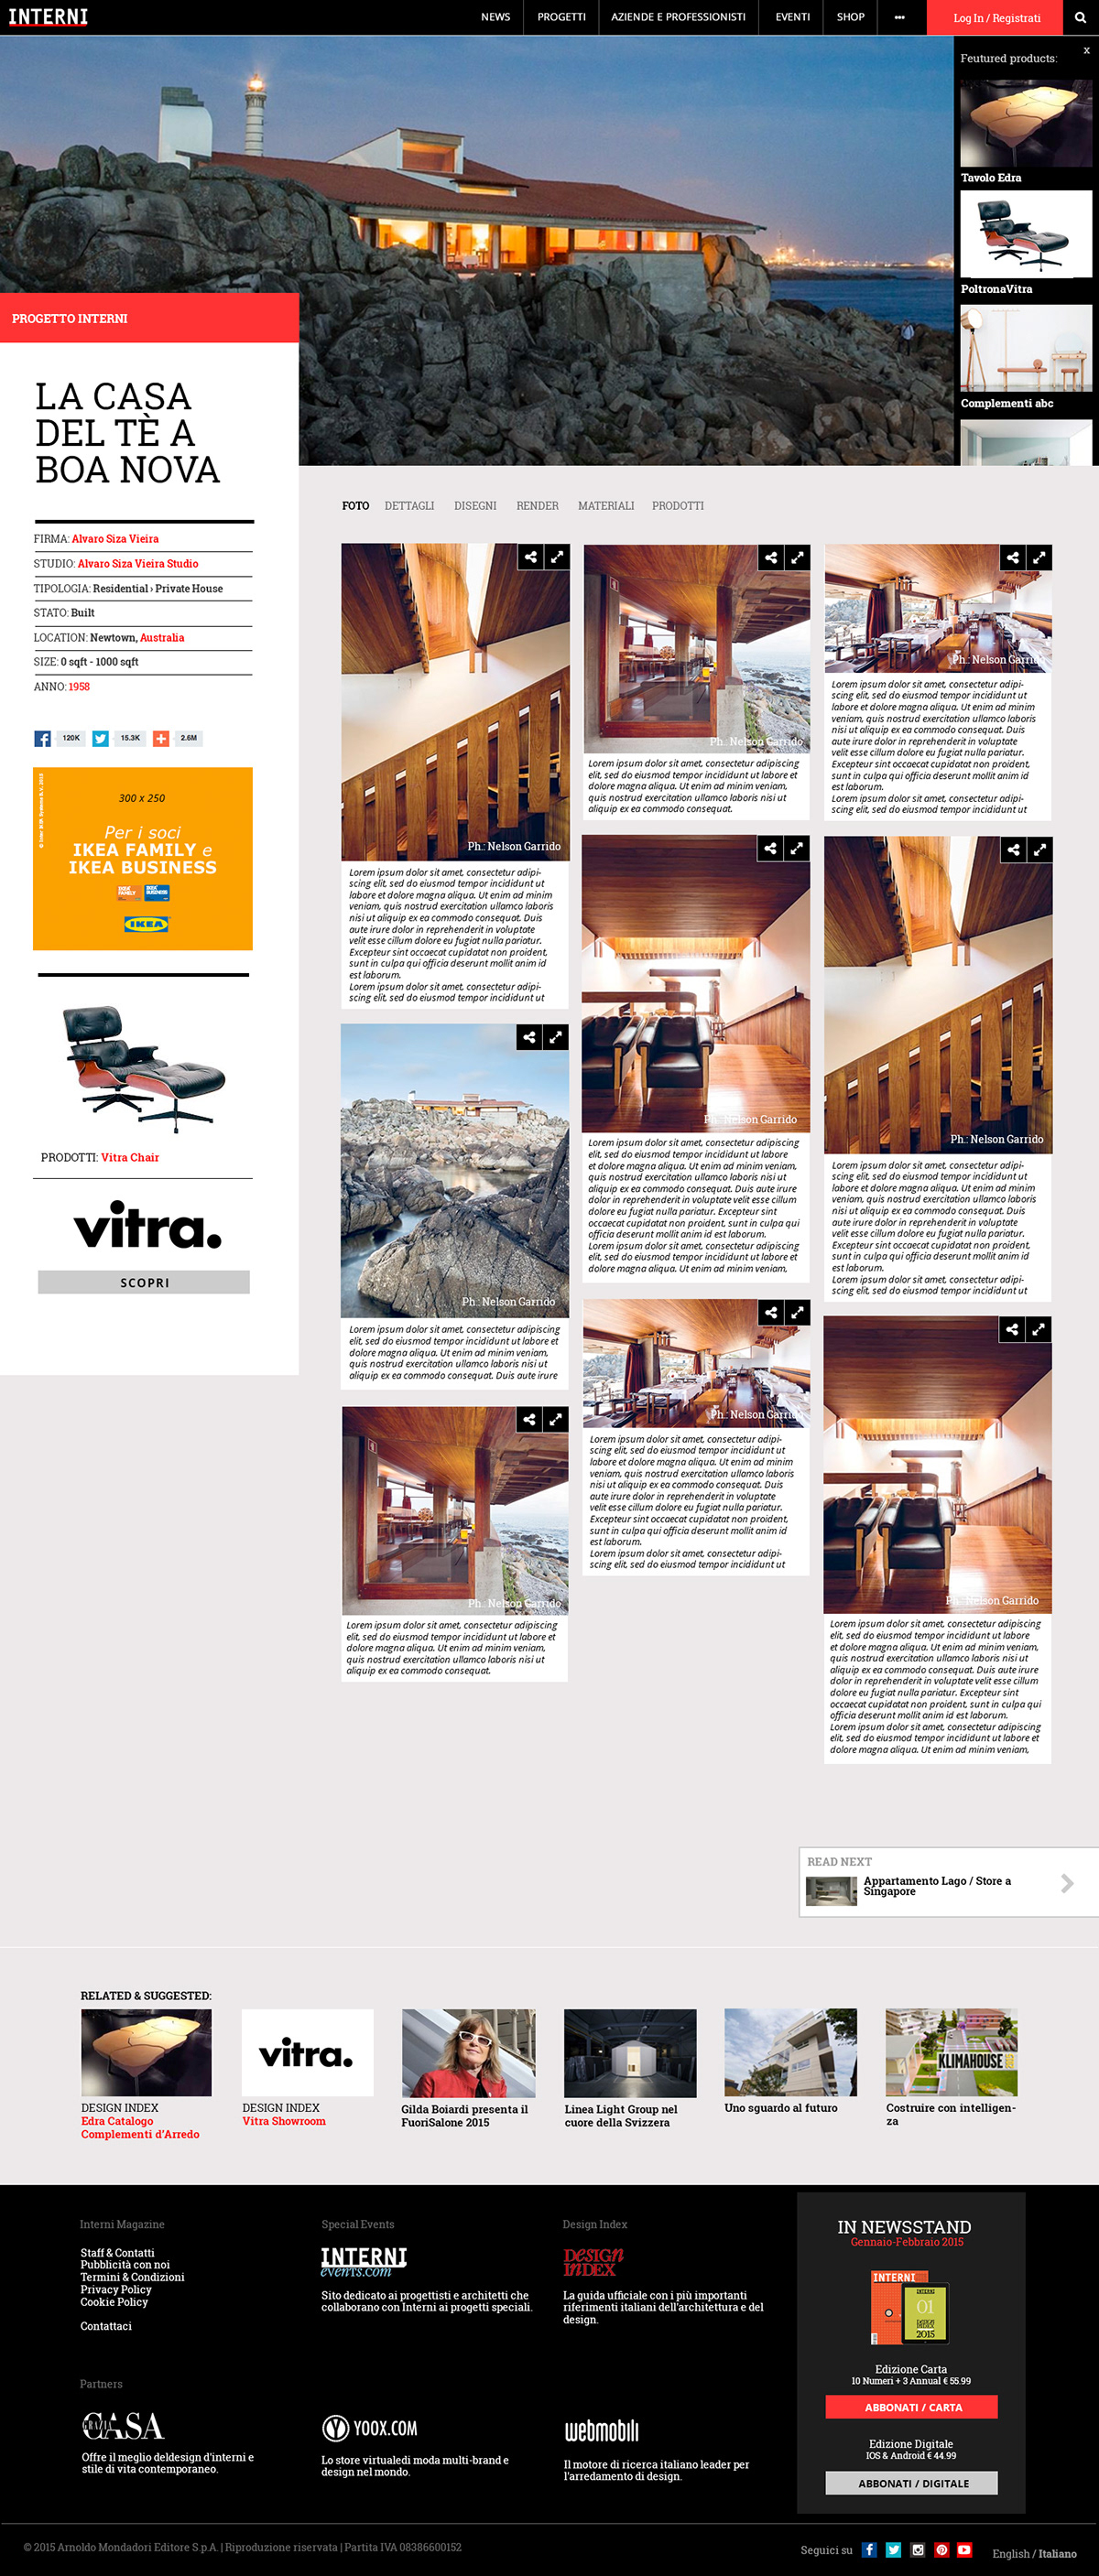 INTERNI magazine editorial news Interiors and Architecture Responsive Design salone del mobile milano fuorisalone Energy for Creativity design index Adv display app download